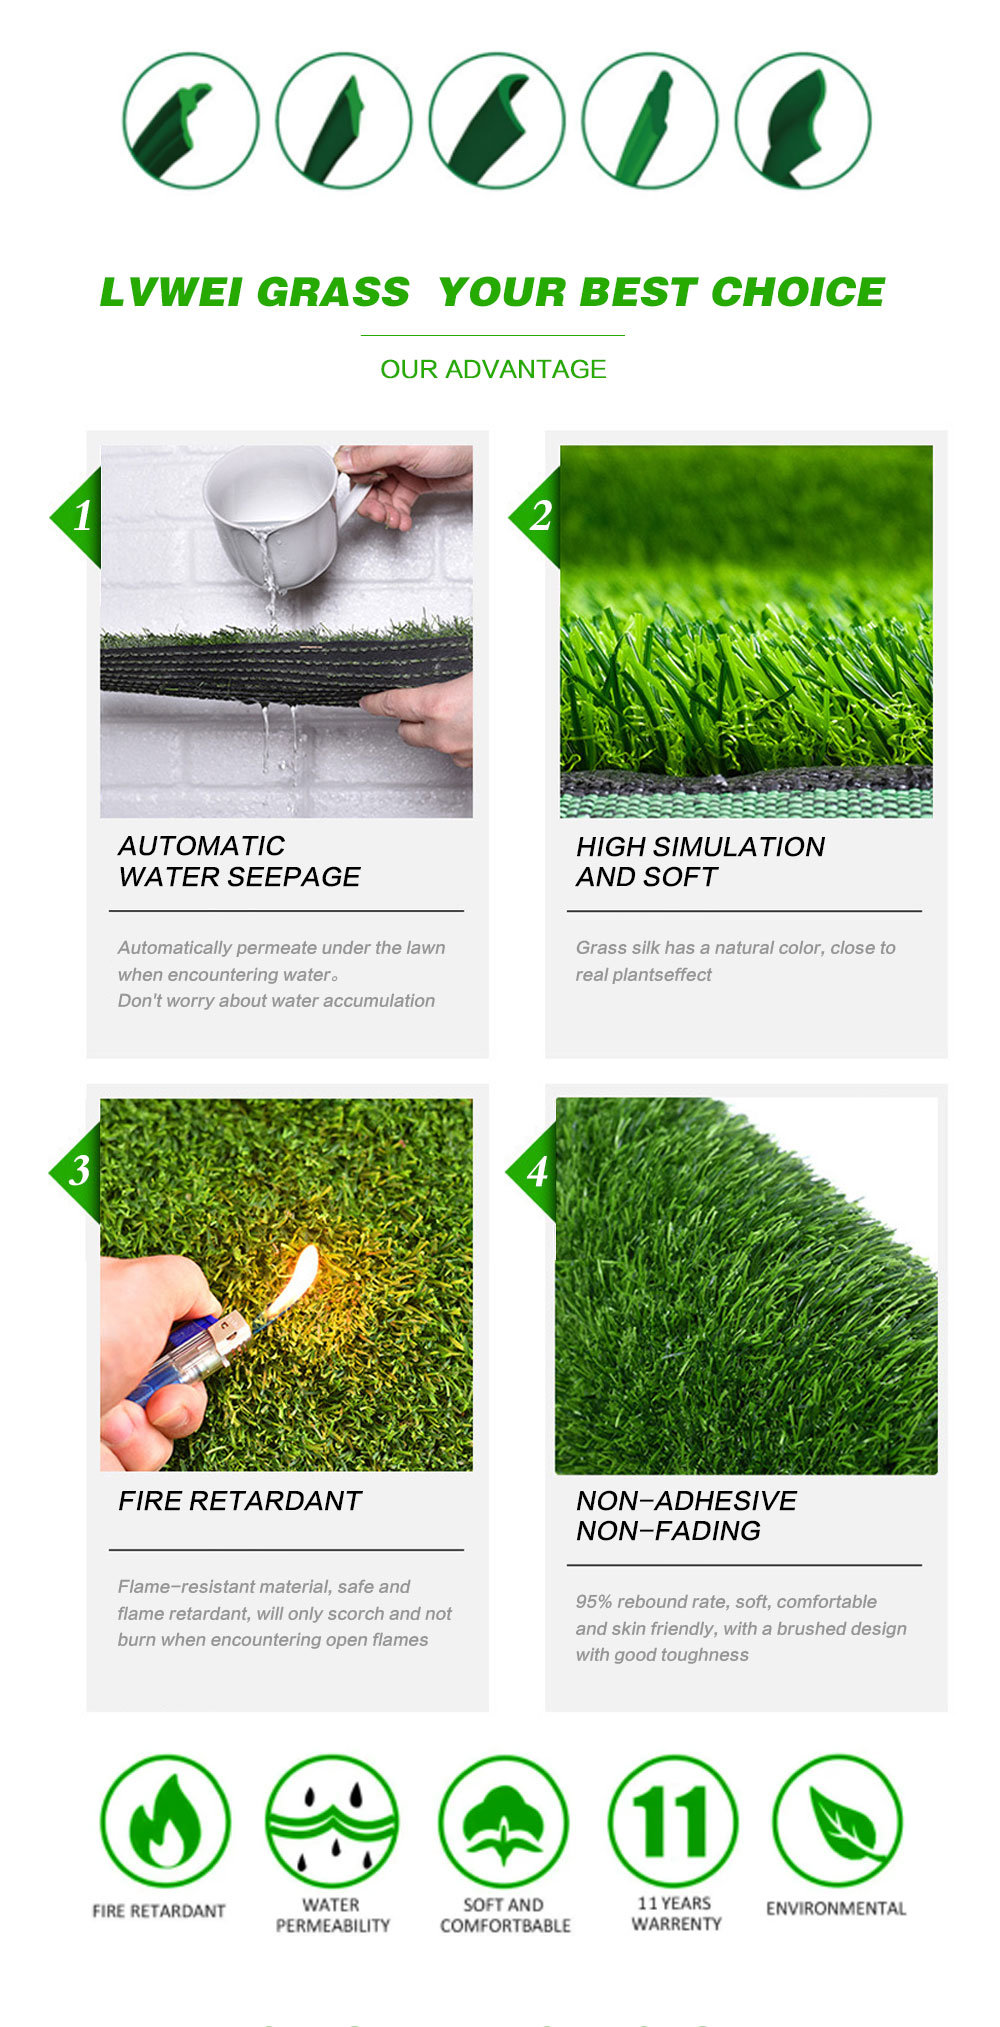 New PP Bag Monofilament 2m*25m Garden Artificial Grass 50mm